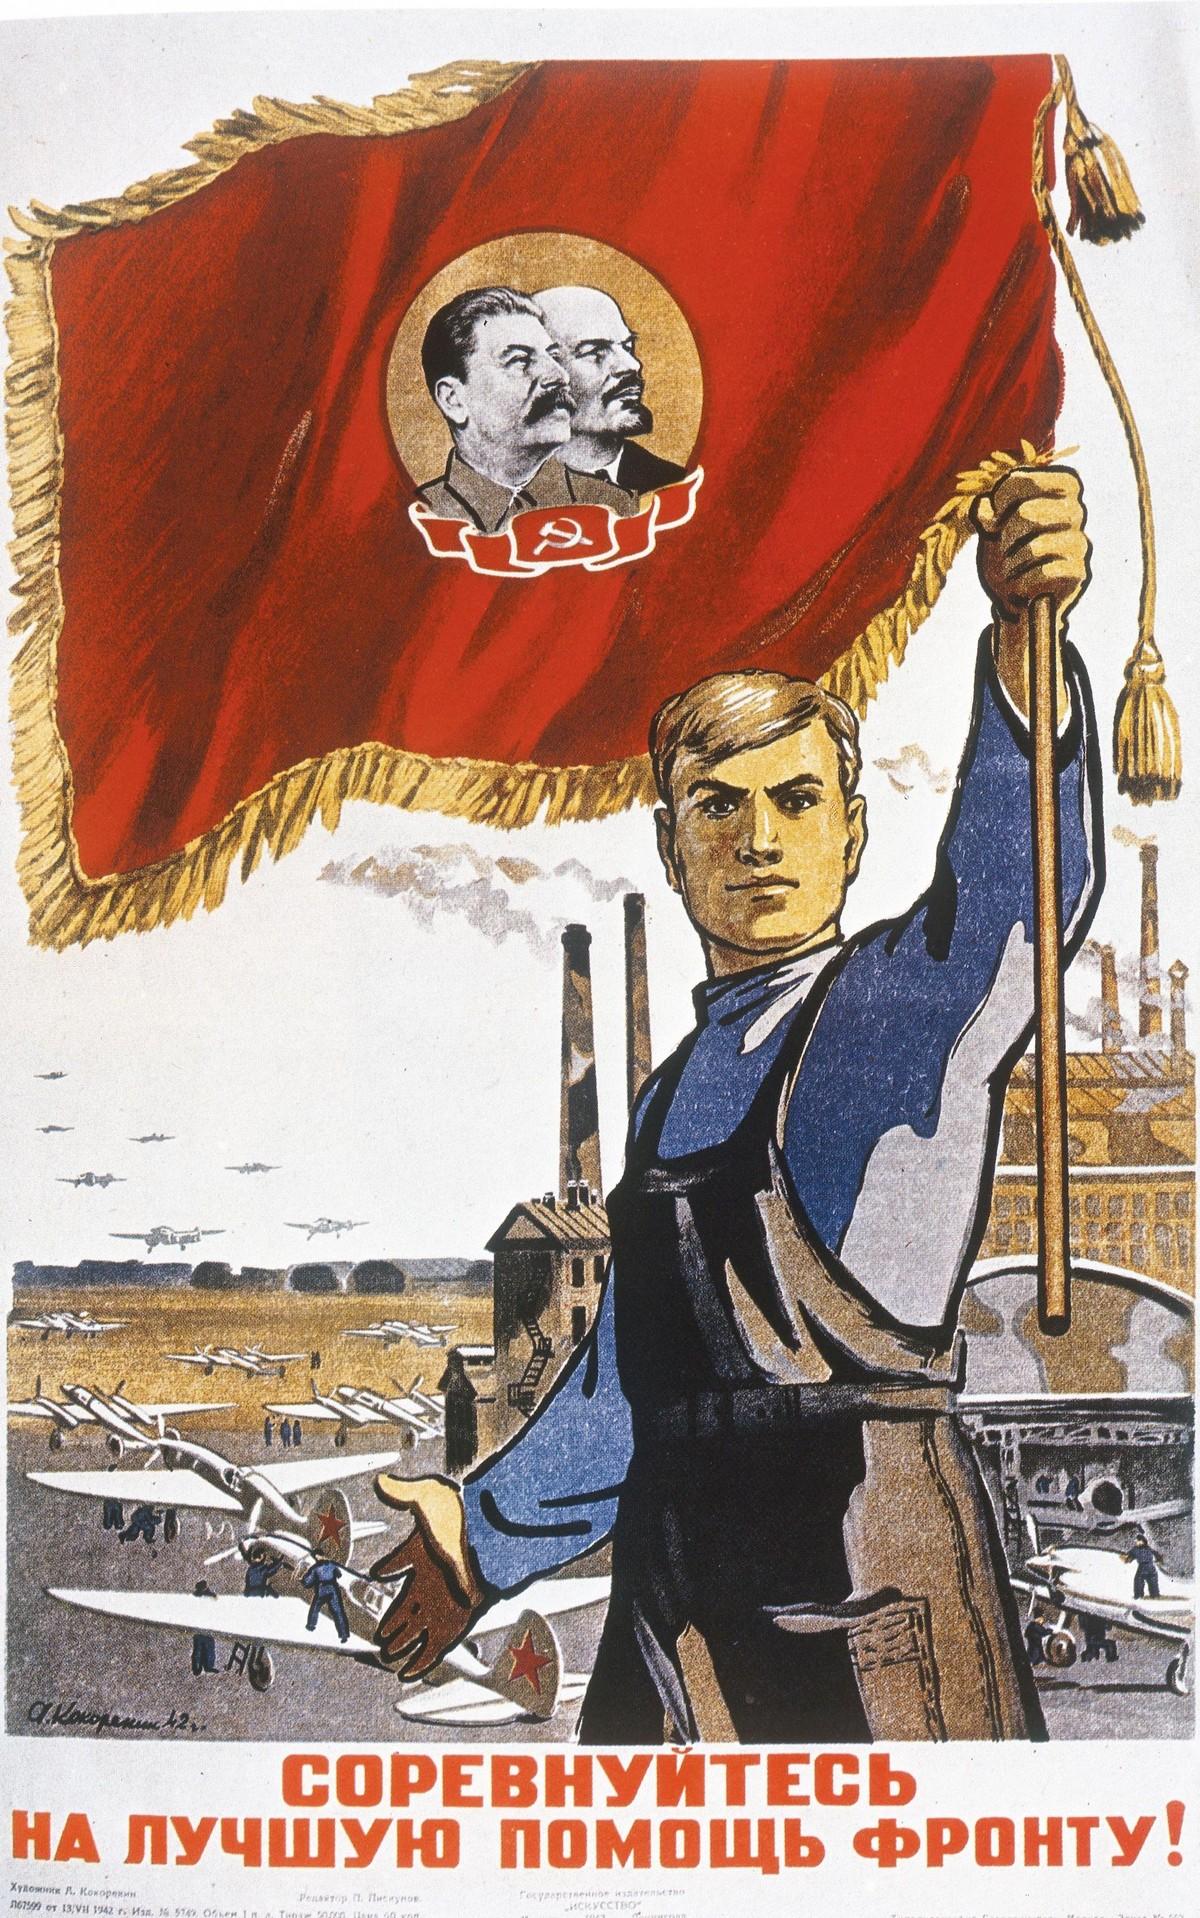 Doc. 2 : Mobilisation pour l'économie de guerre en URSS, « Suivez l'exemple de ce travailleur, produisez plus pour aider le front », affiche soviétique, 1942.